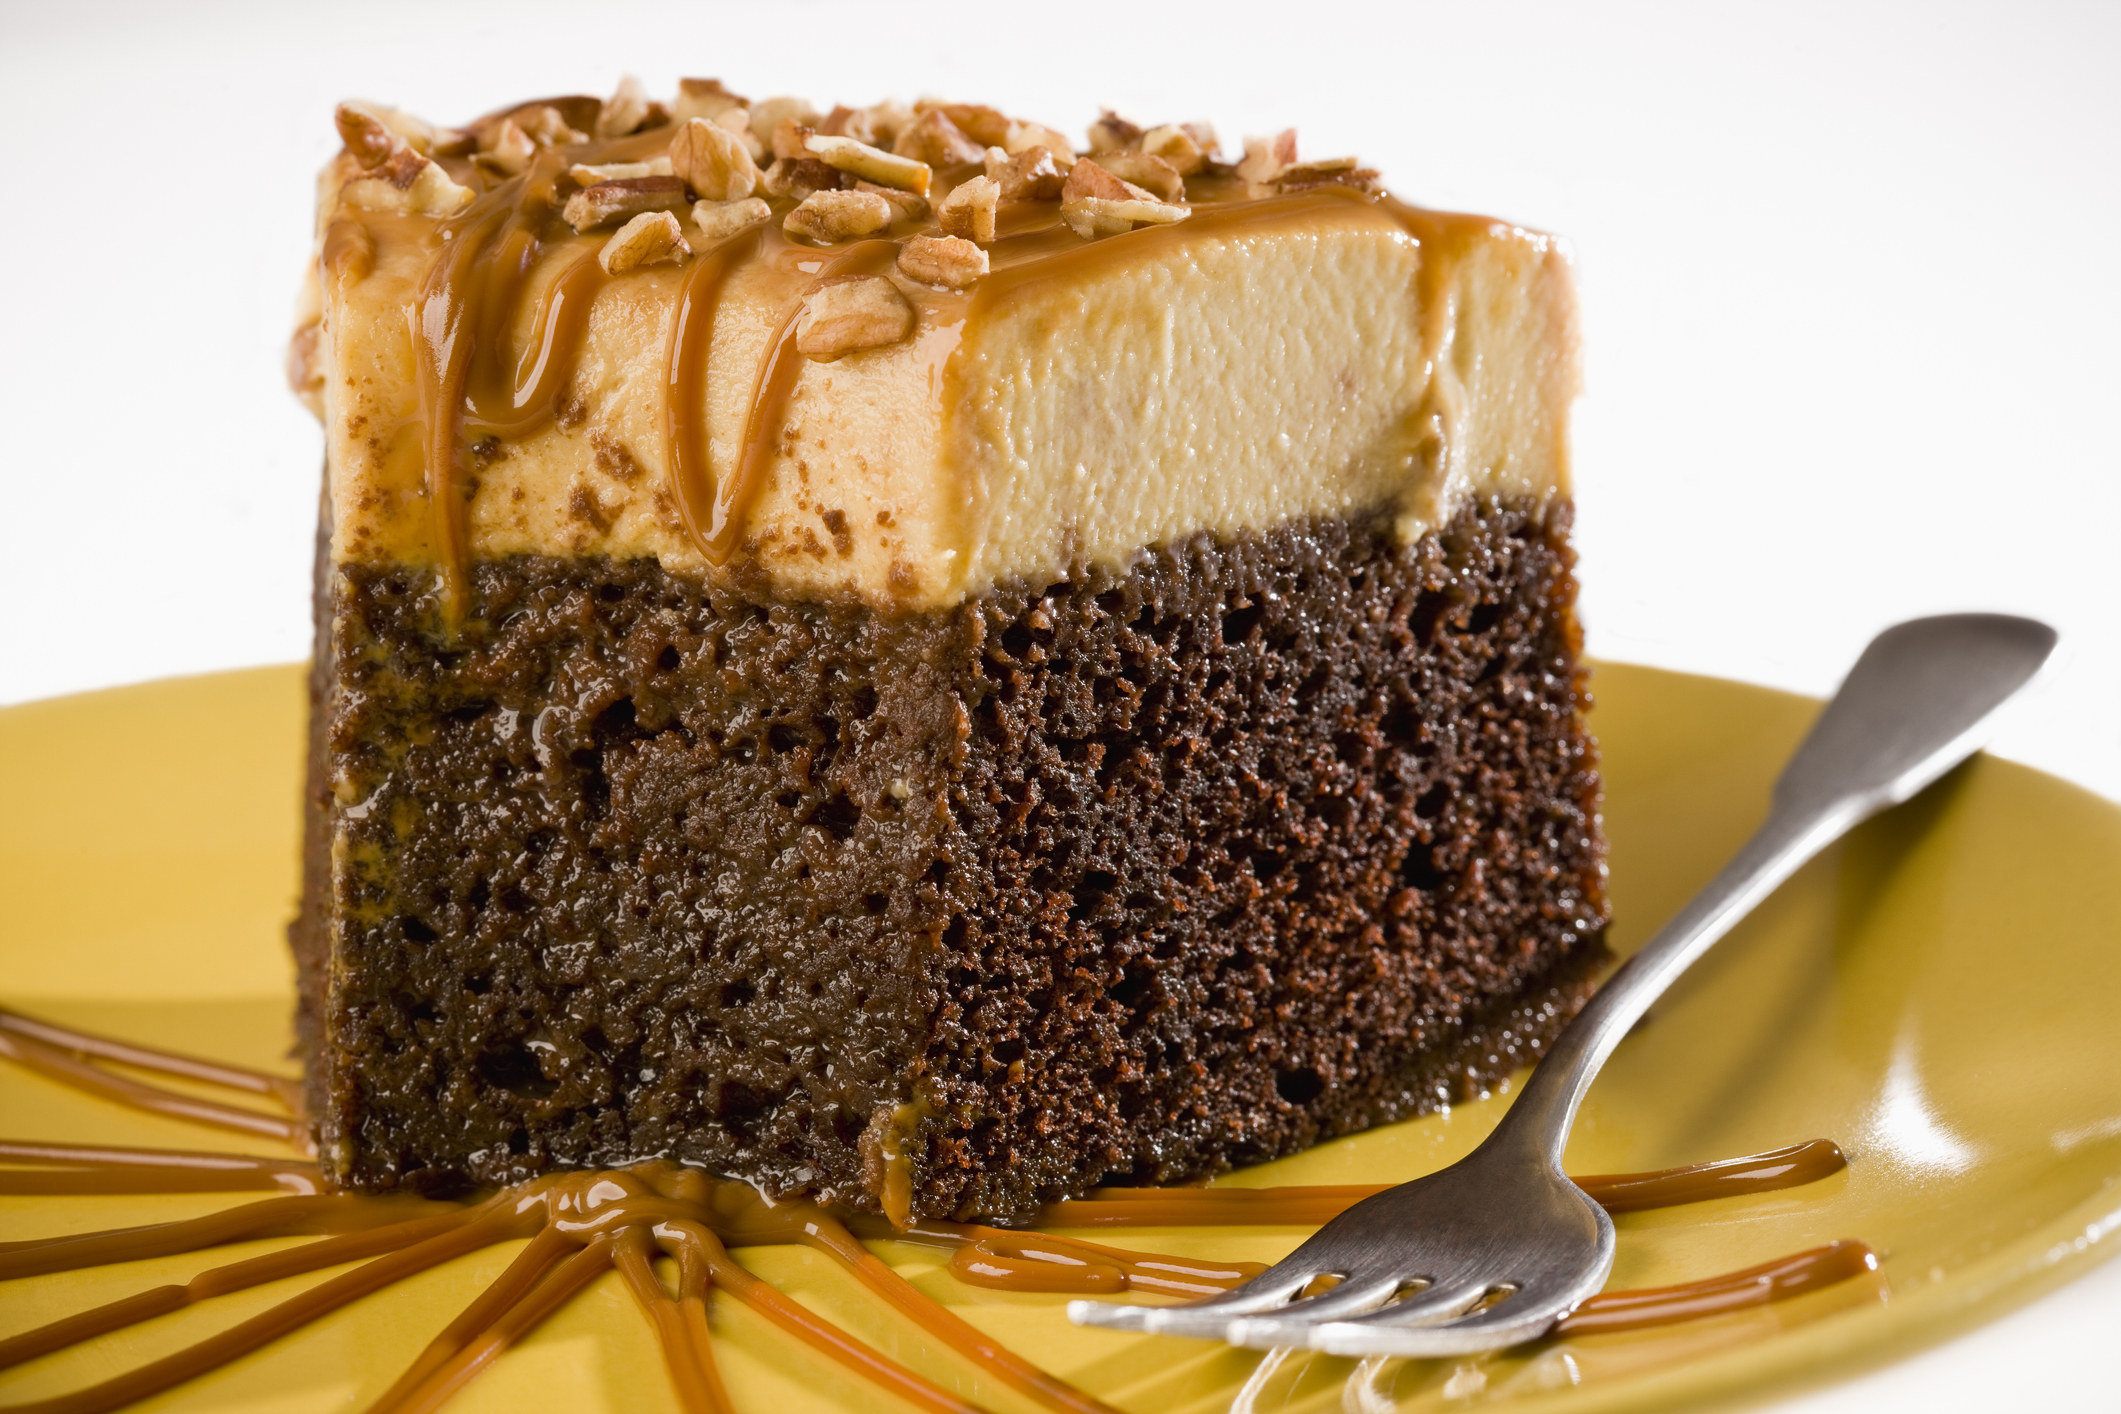 Cakes of the world: From tiramisu to cheesecake | CNN